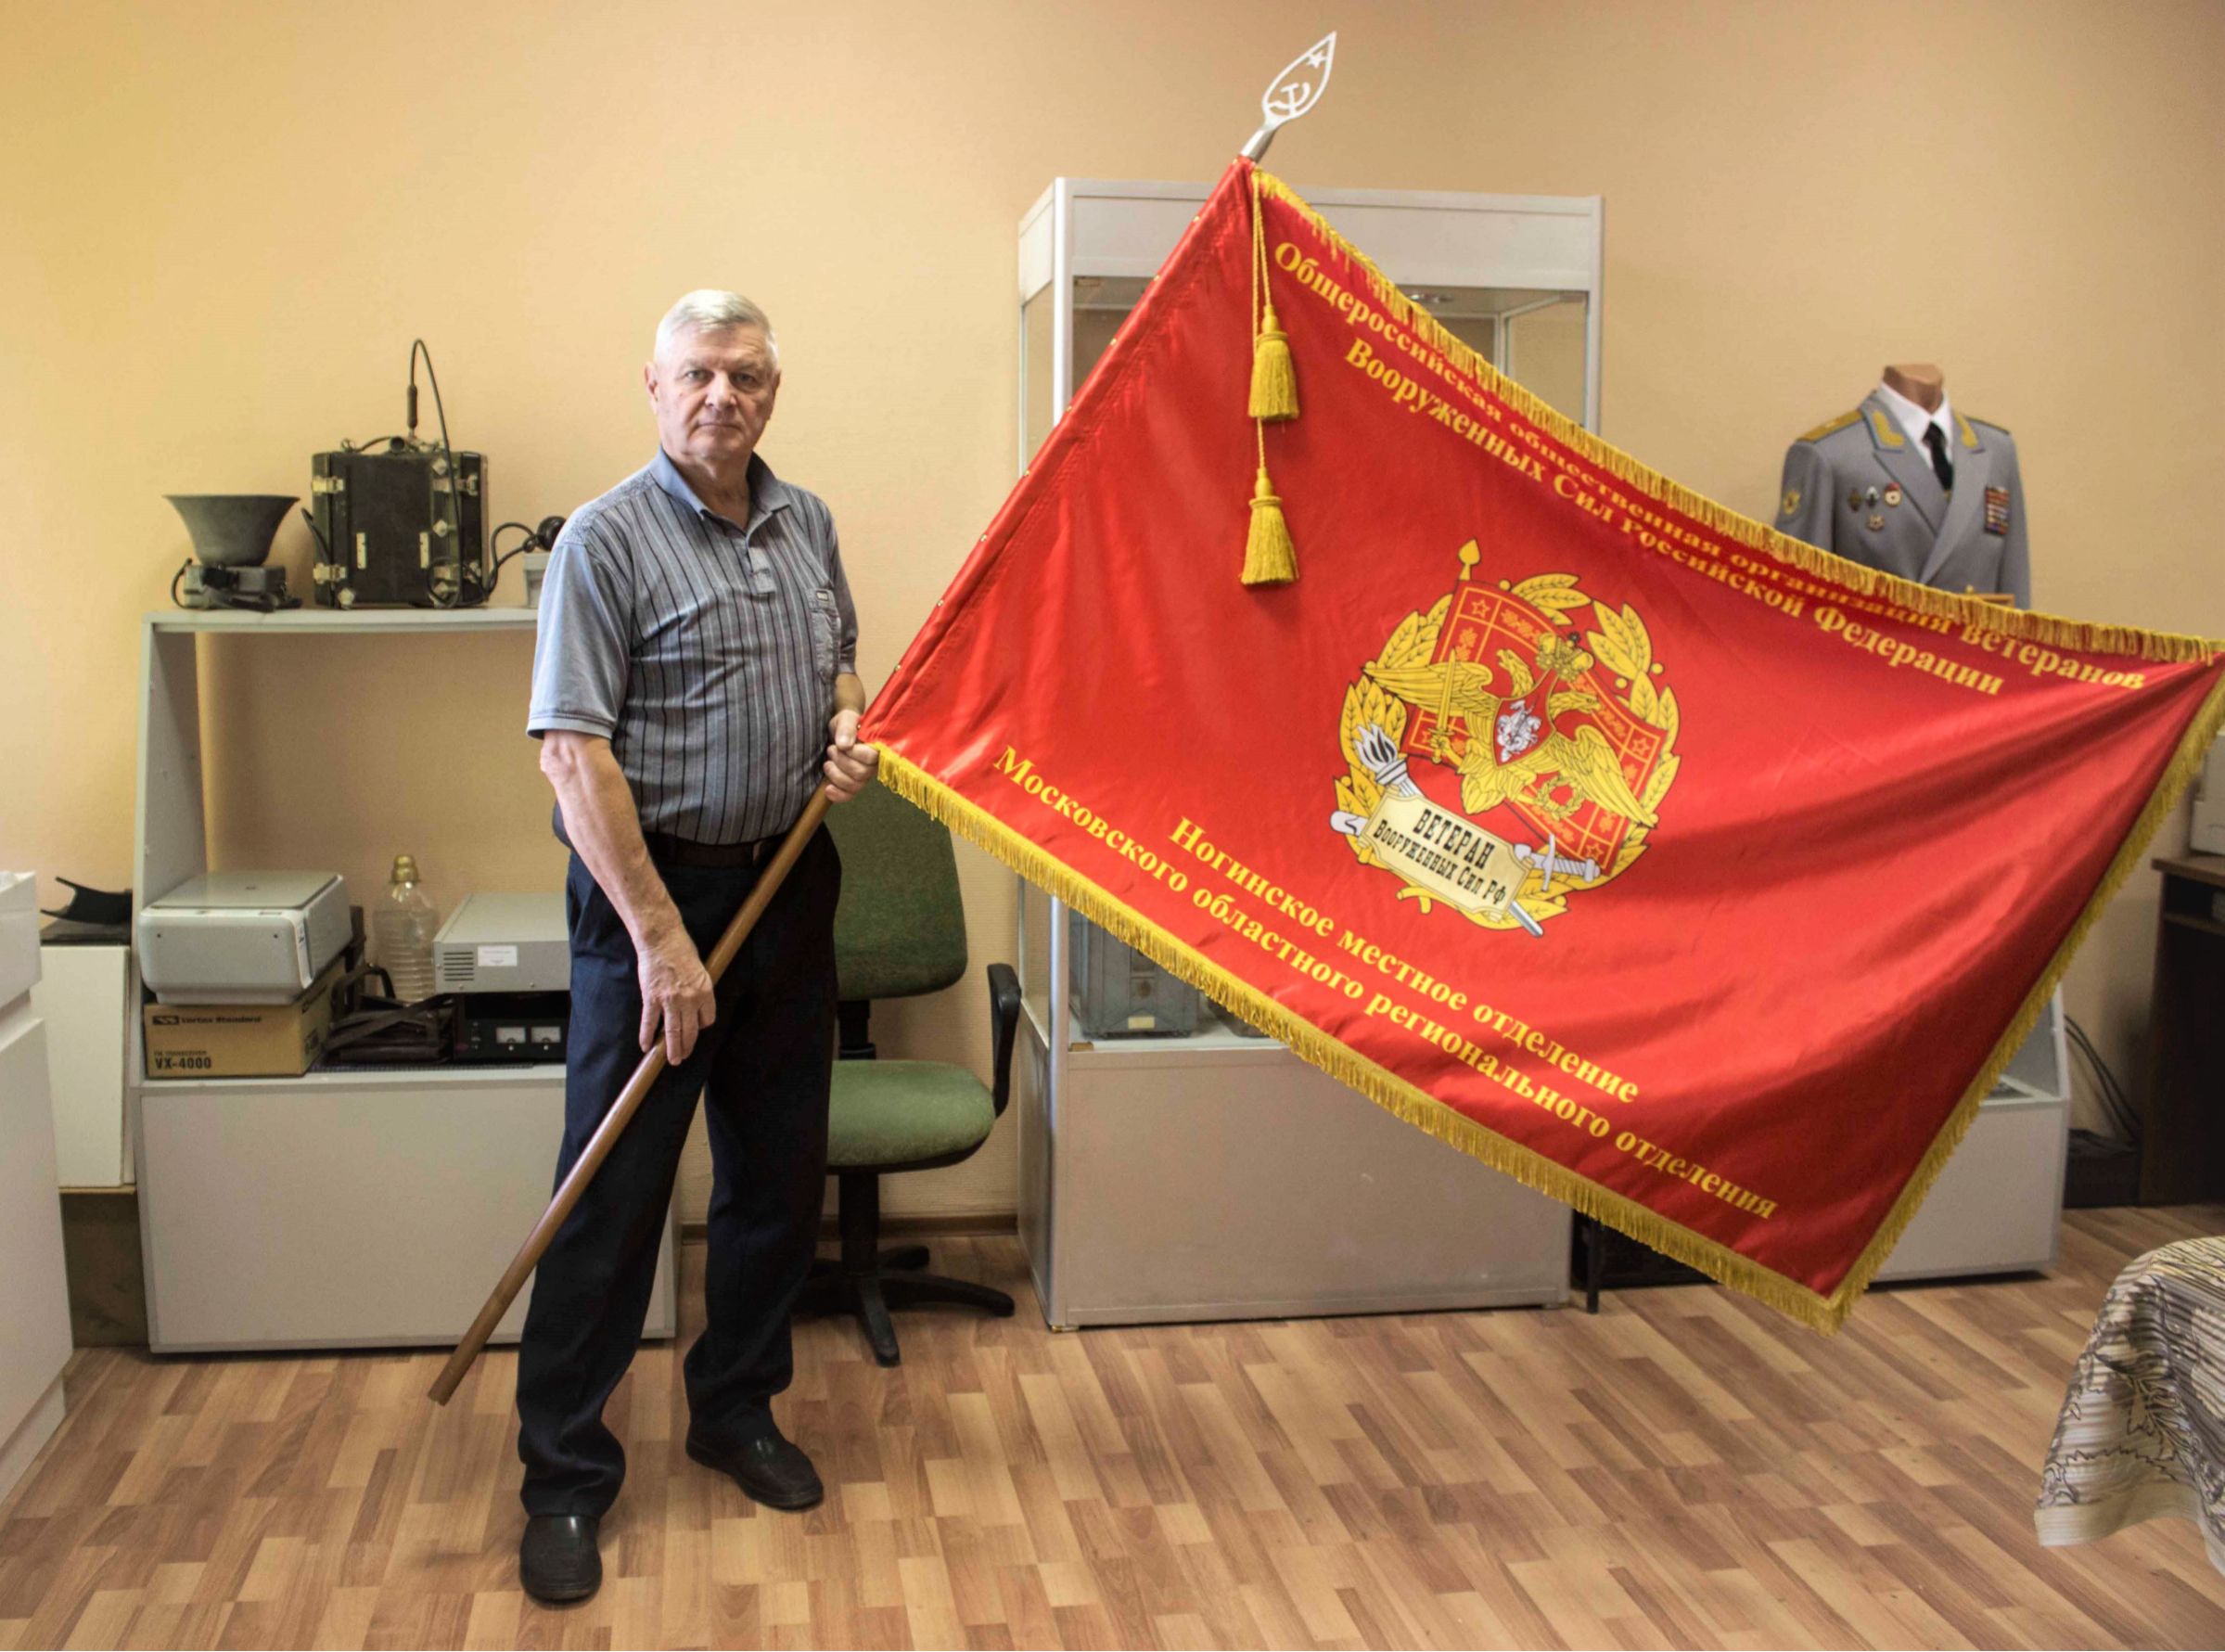 Ветеран подразделения, создатель музея, со знаменем